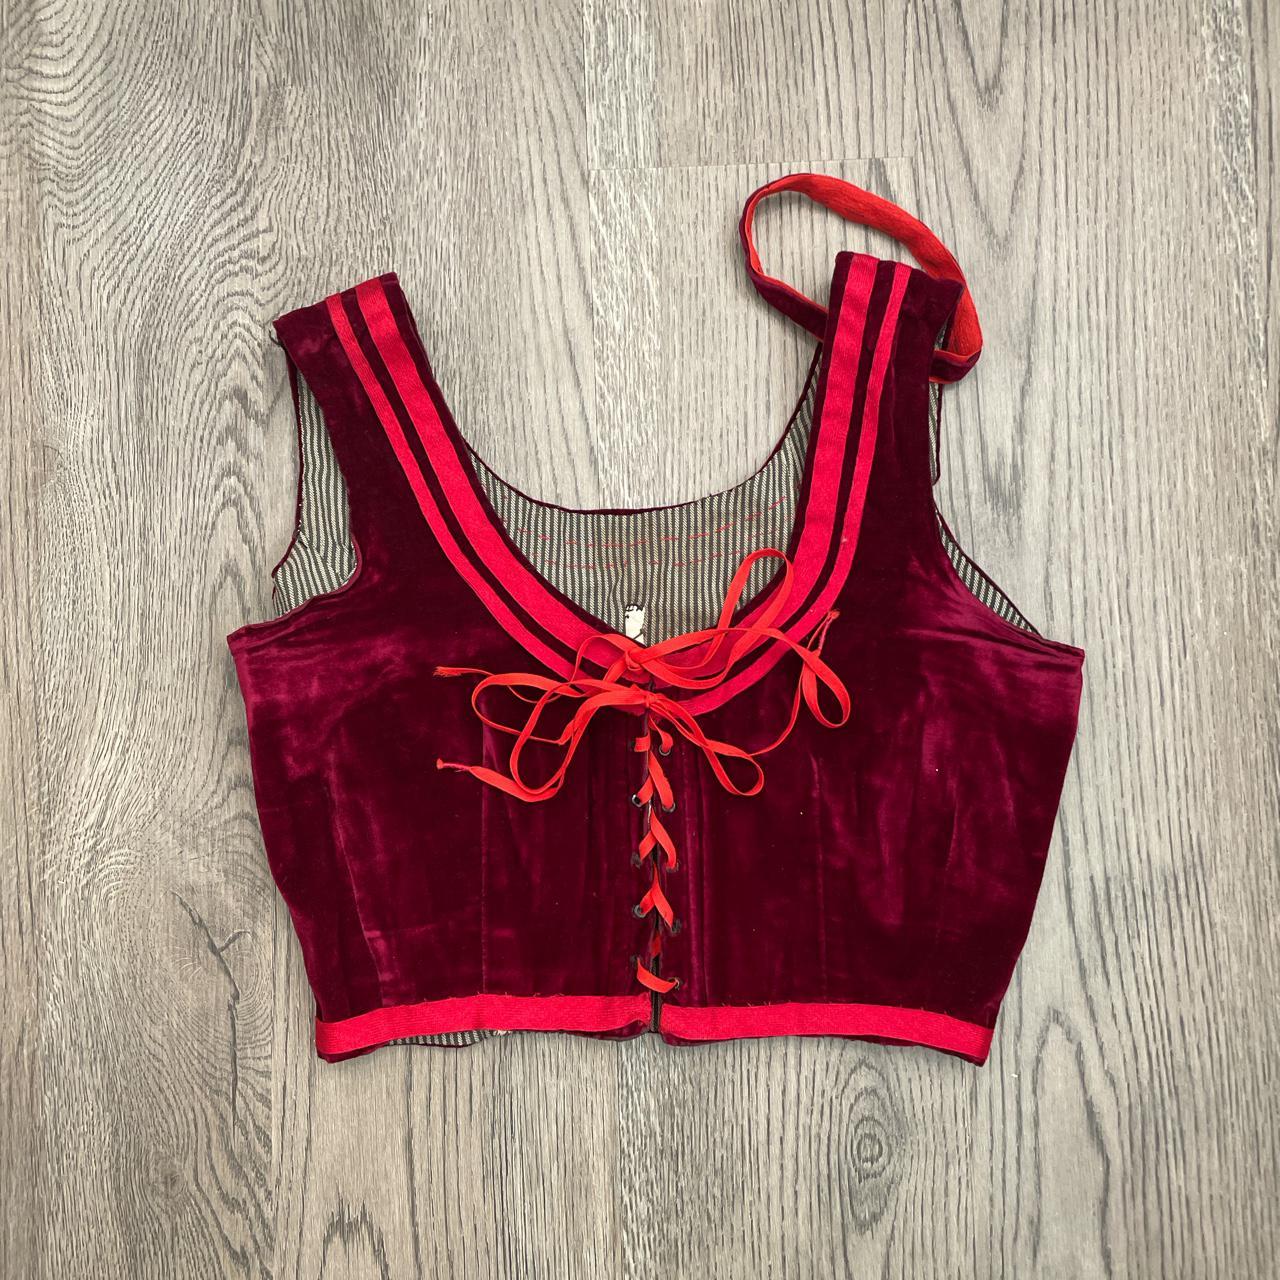 Product Image 1 - Red velvet corset style bralette